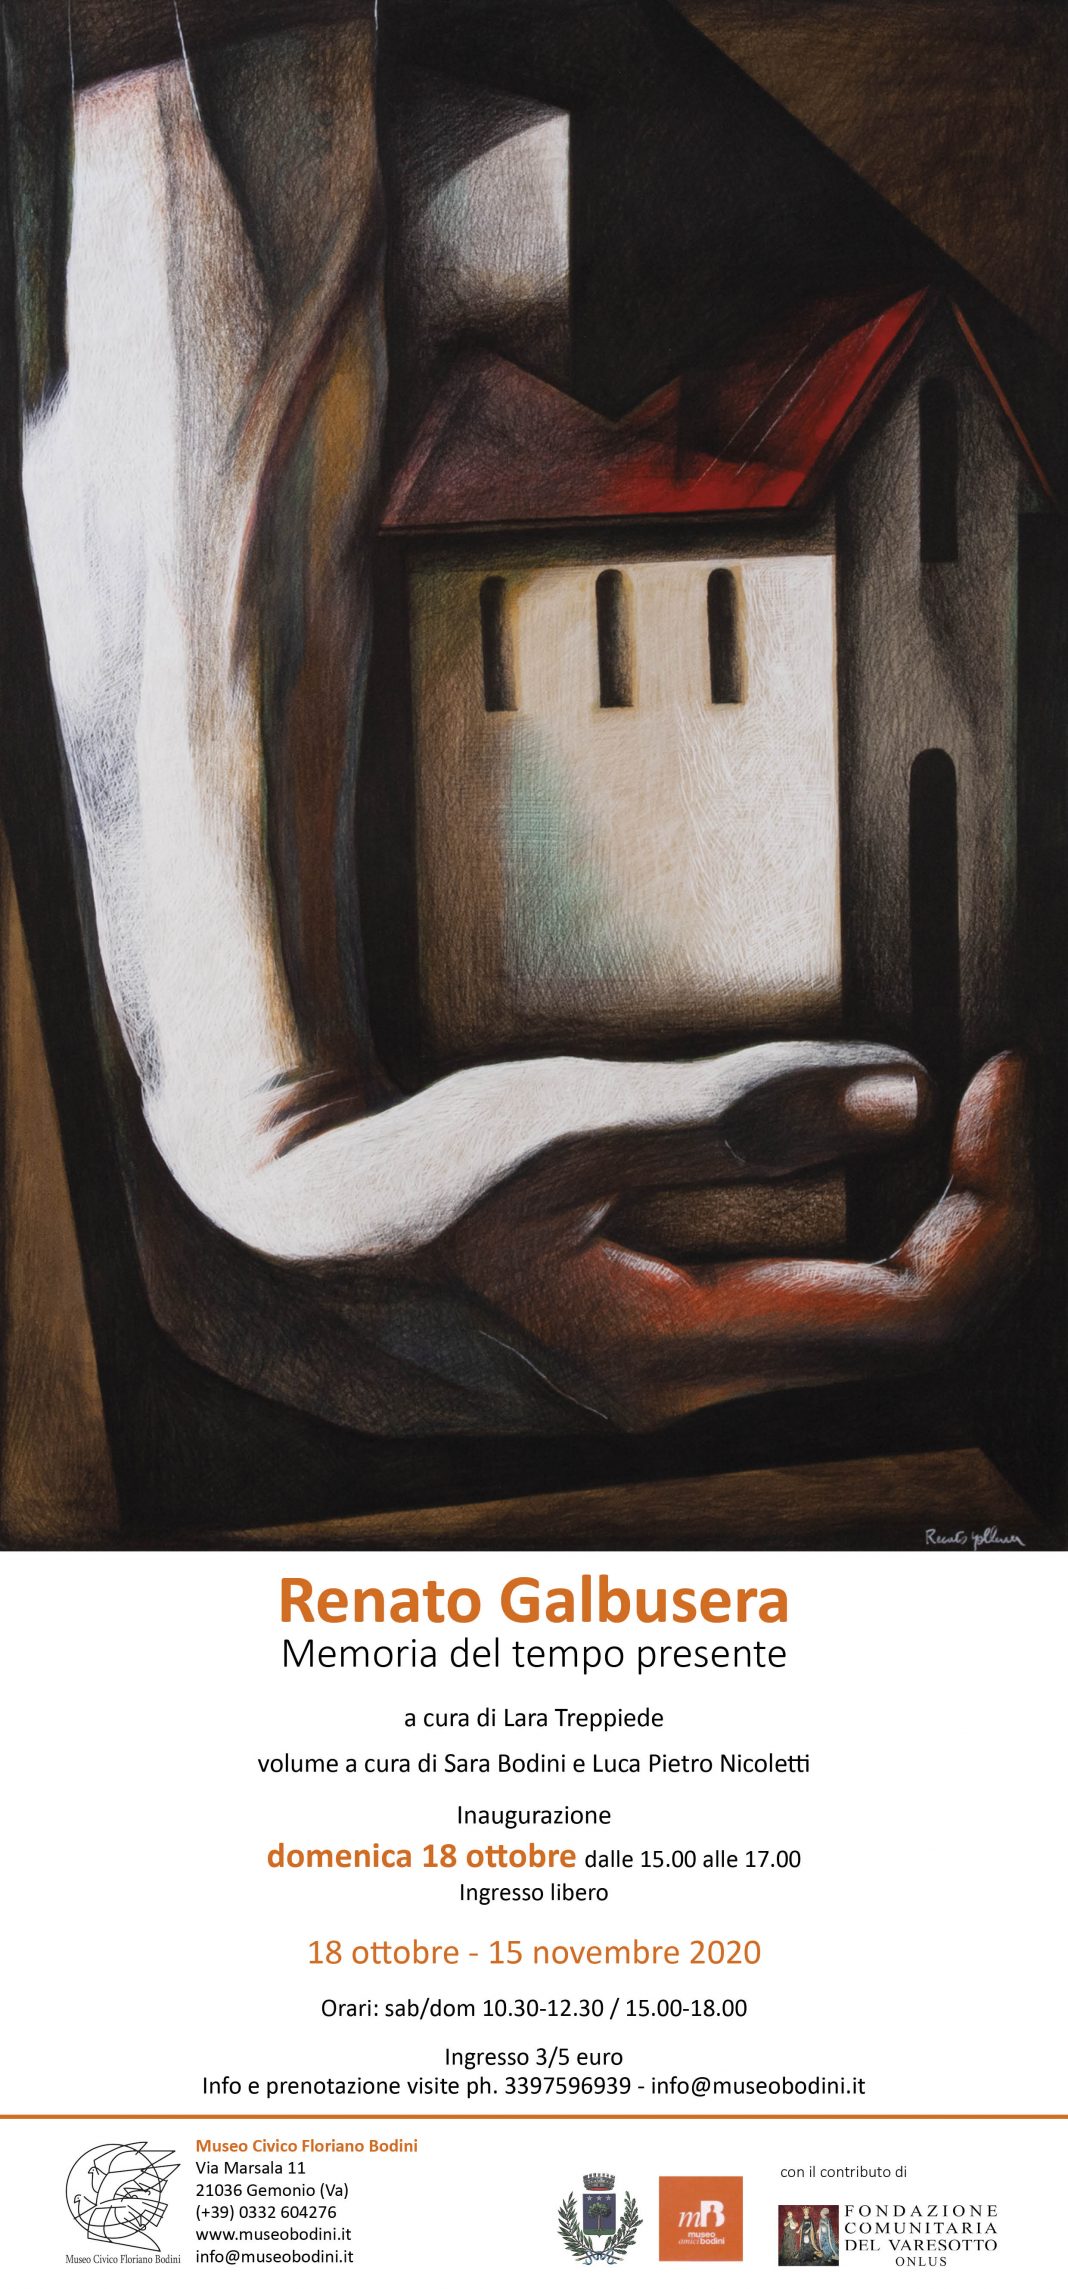 Renato Galbusera – Memoria del tempo presentehttps://www.exibart.com/repository/media/formidable/11/locandina-Renato-1068x2289.jpg